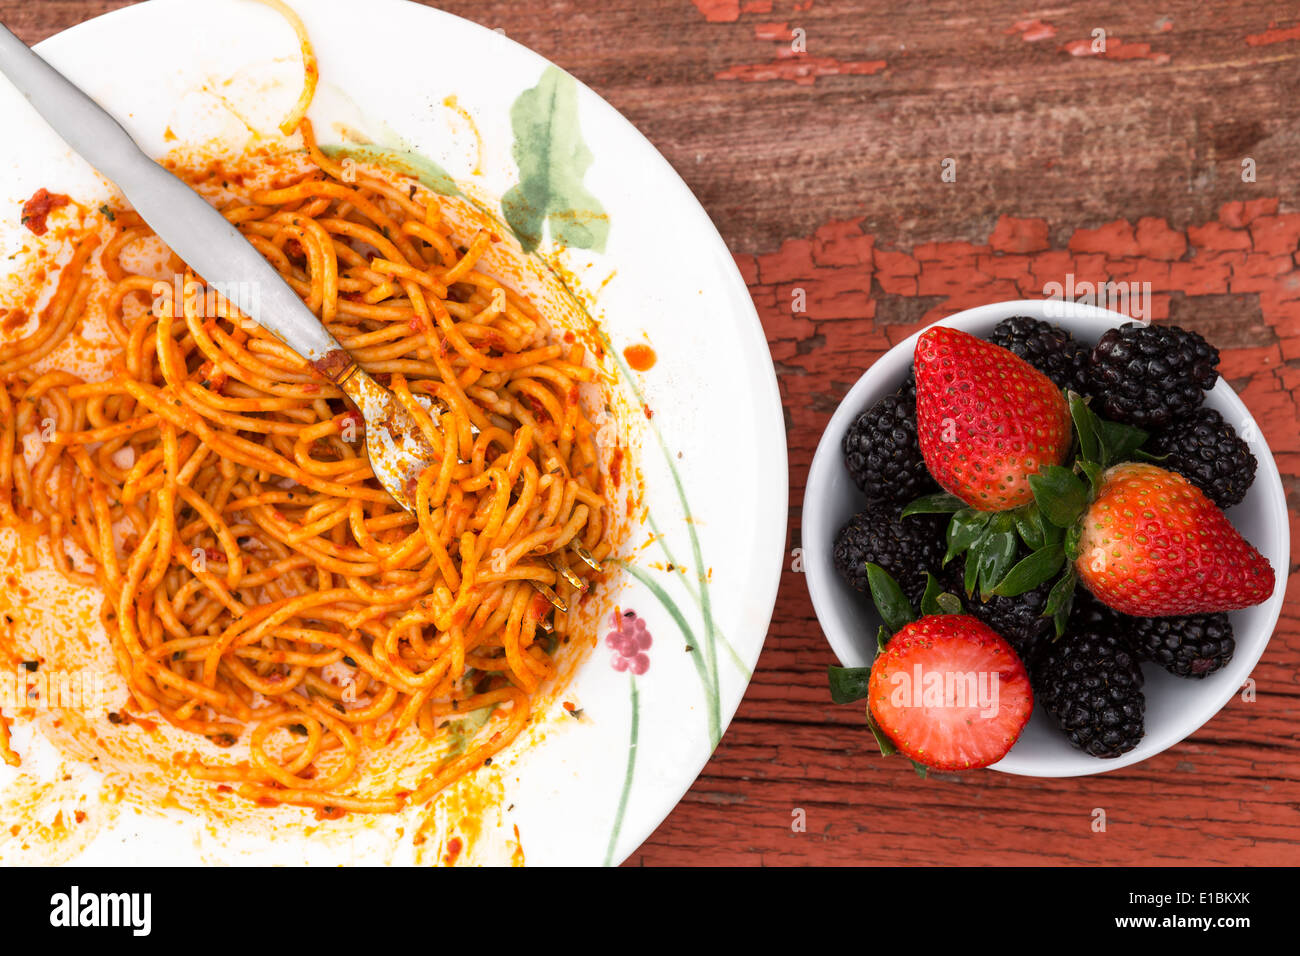 Vue aérienne d'un plat de spaghettis à la bolognaise dans une riche sauce tomate et dessert aux petits fruits avec des fraises et noir Banque D'Images